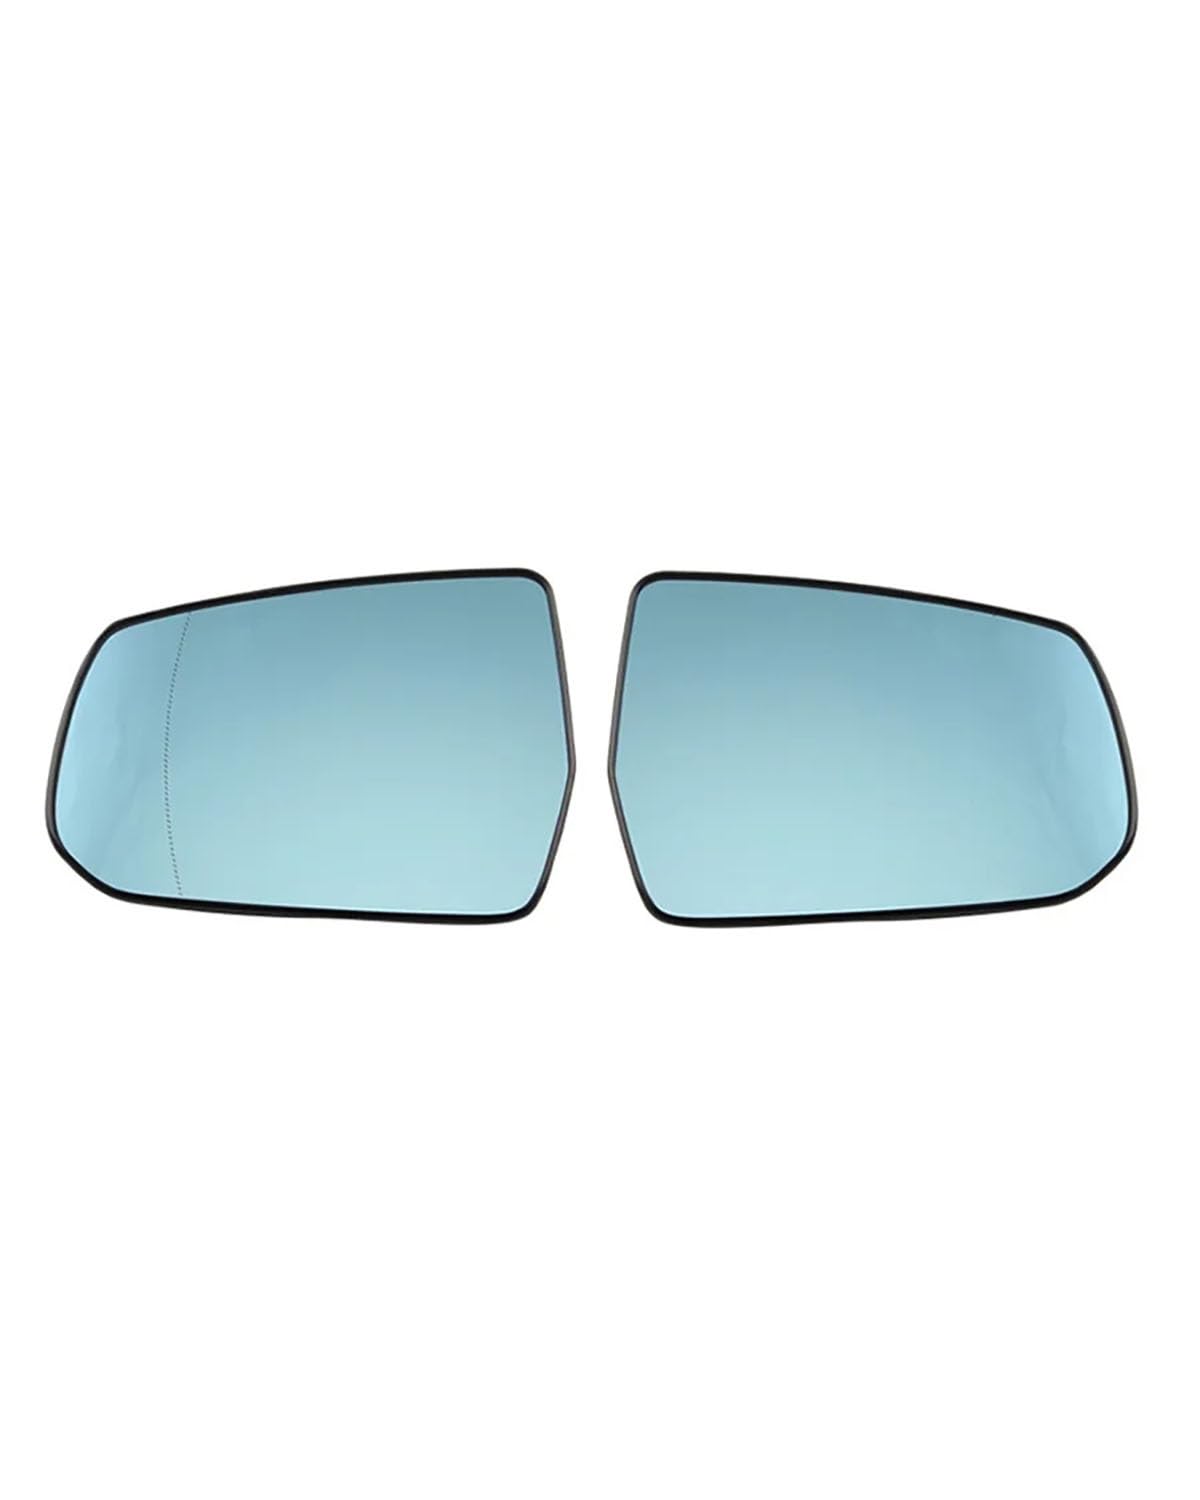 Außenspiegel Glas Für Malibu Für XL 2016-2022 Autozubehör Seitenspiegel Reflektierende Linsen Rückspiegelglas Blaue Linse Mit Heizung Rückspiegelglas(2PCS left and right) von MXDDWLKJ